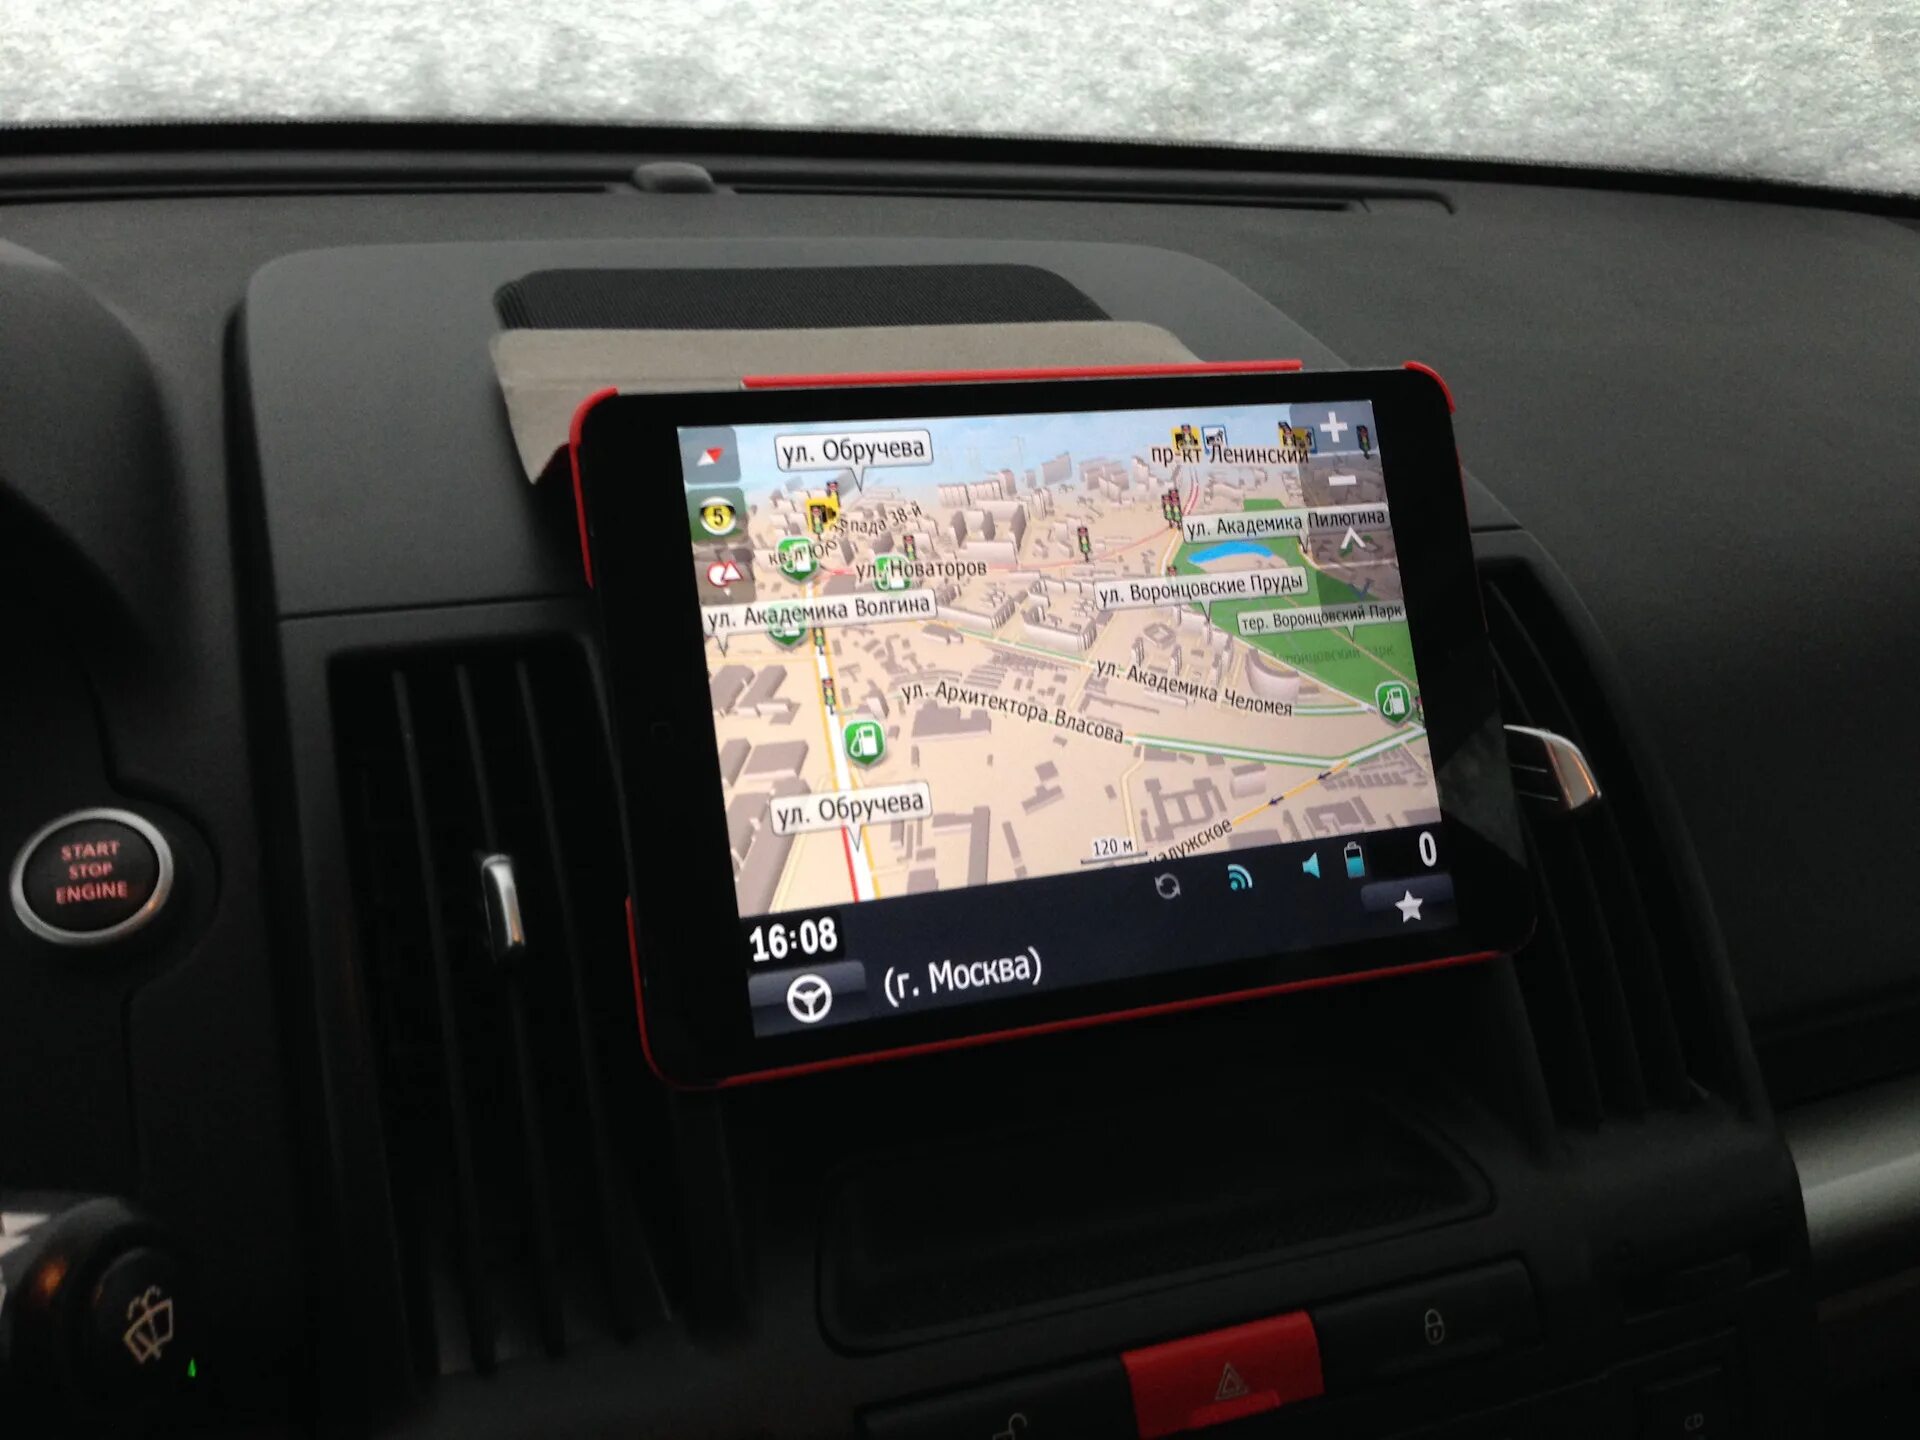 Автонавигатор bx800c. Alpine Quest GPS. Штатный дисплей навигатора Mitsubishi Colt. TOMTOM штатная навигация.